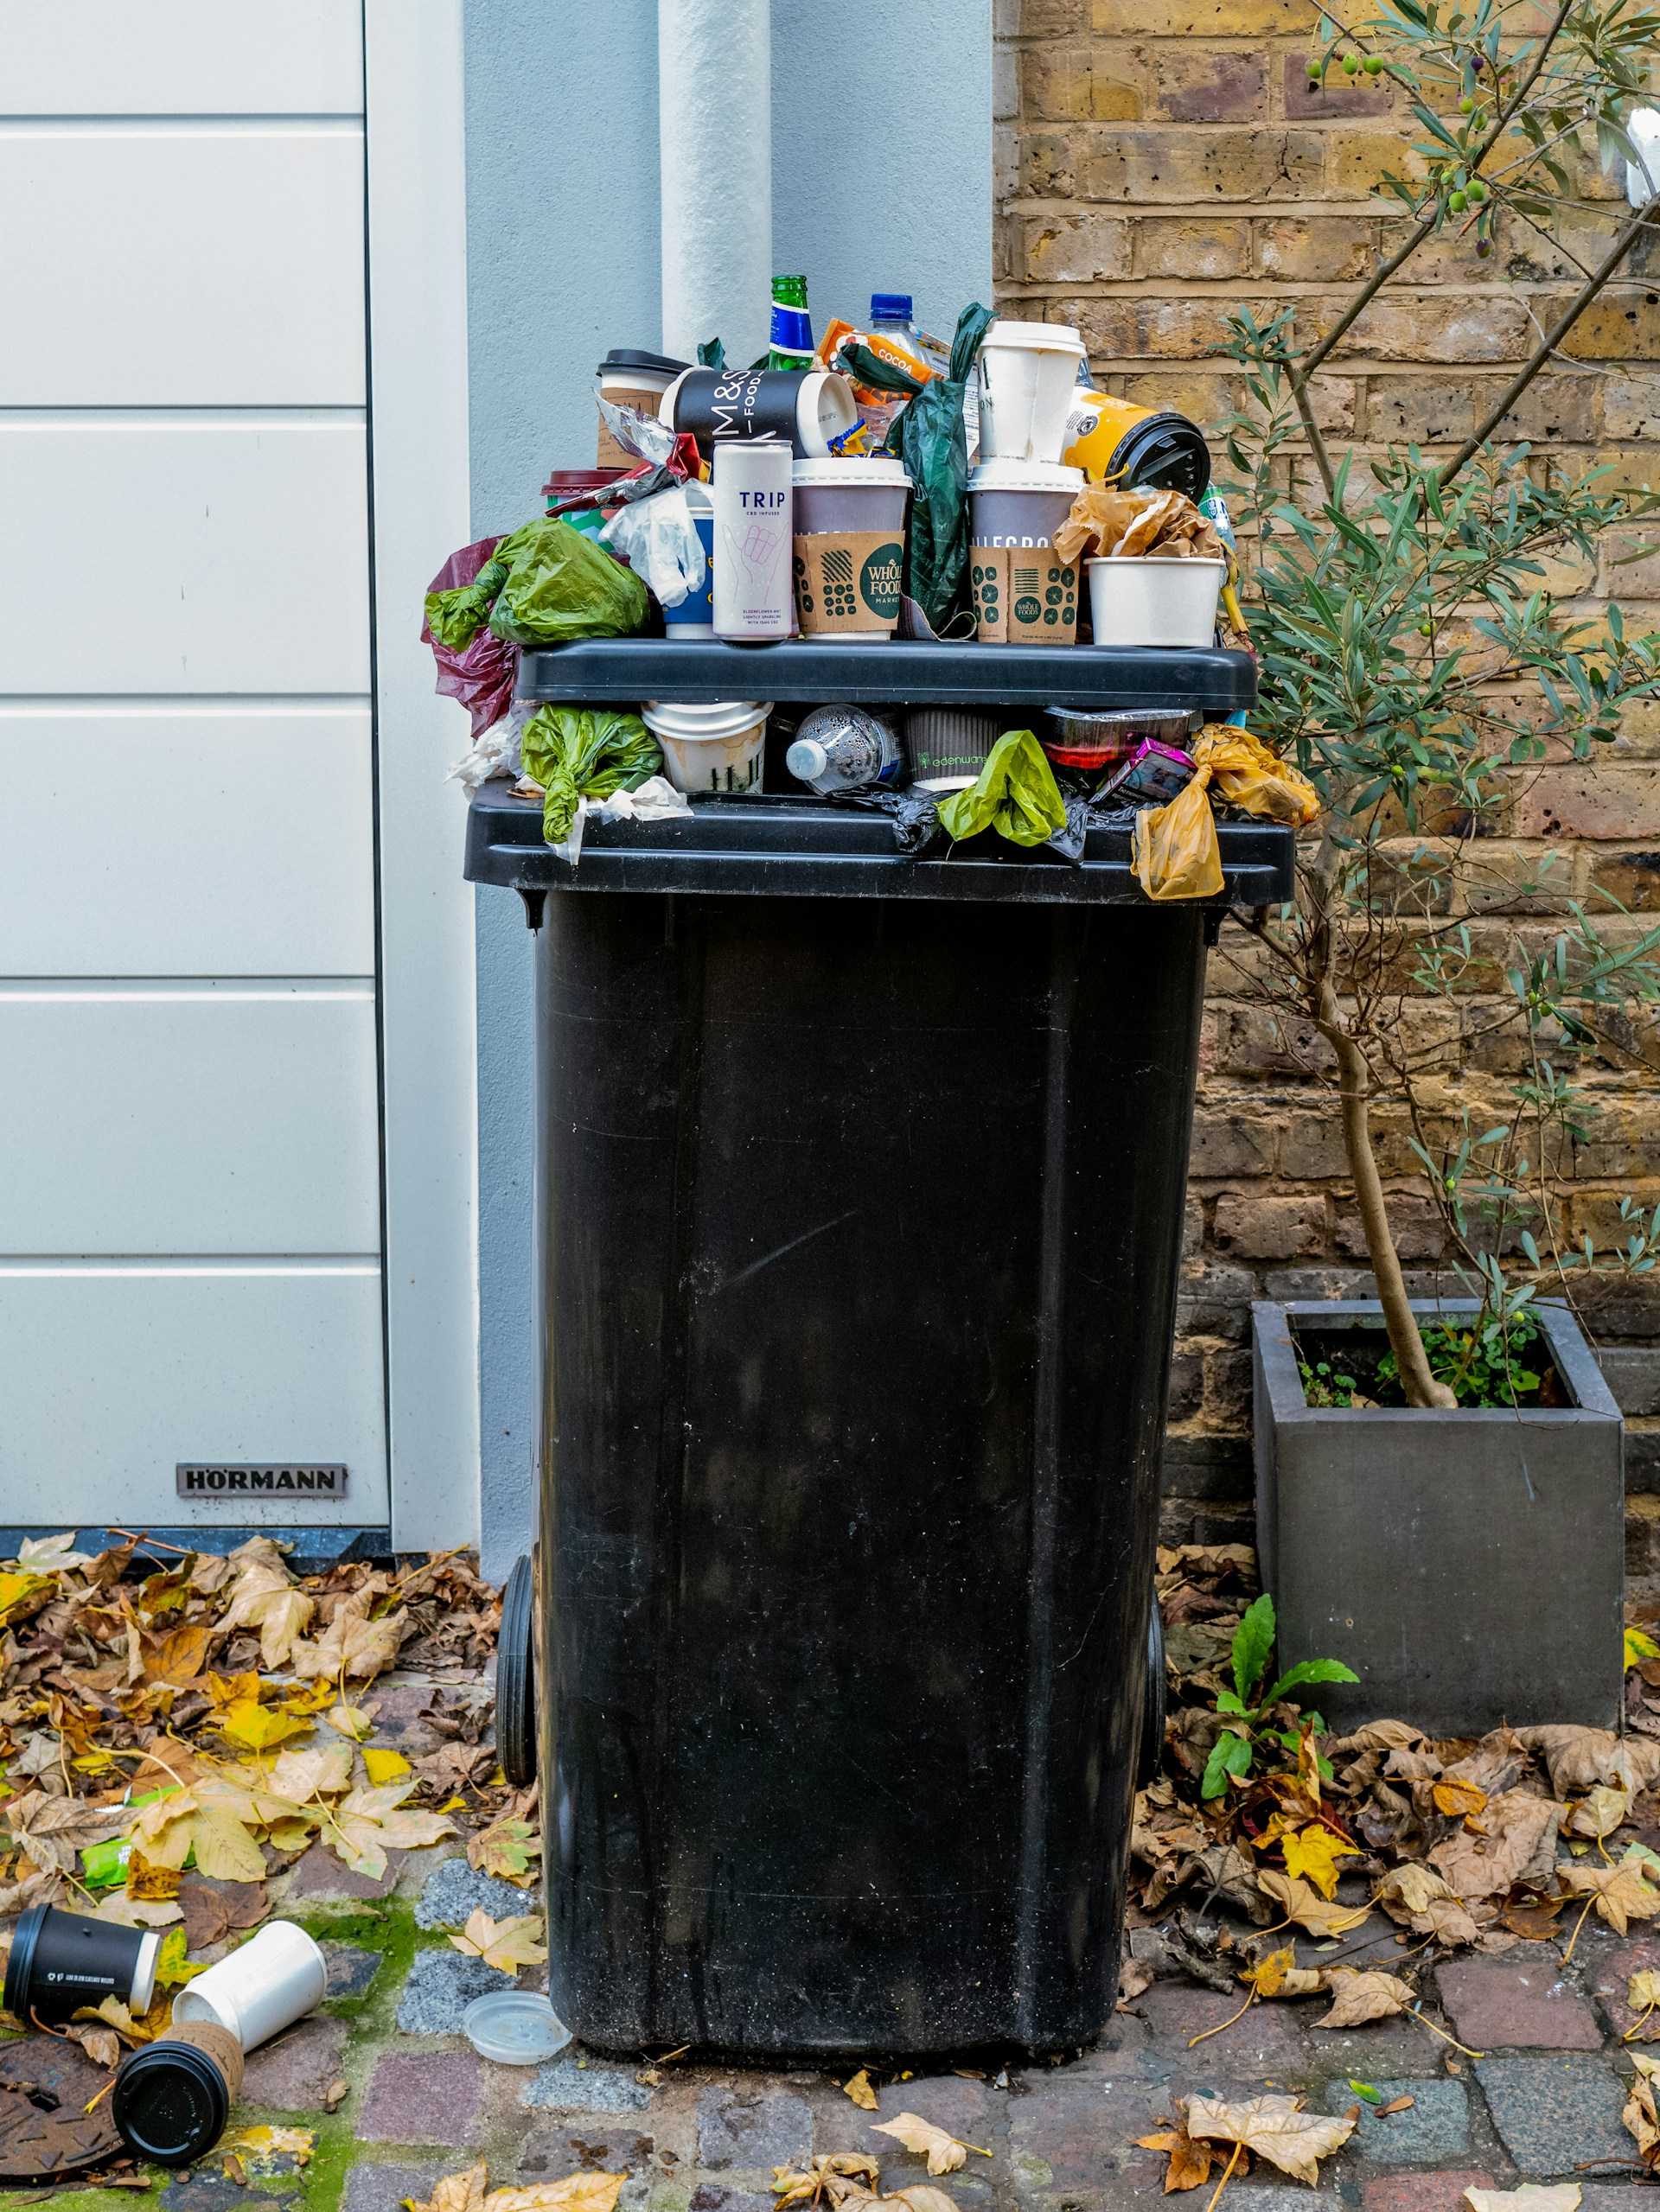 citater en habibi bæredygtighed skrald affald